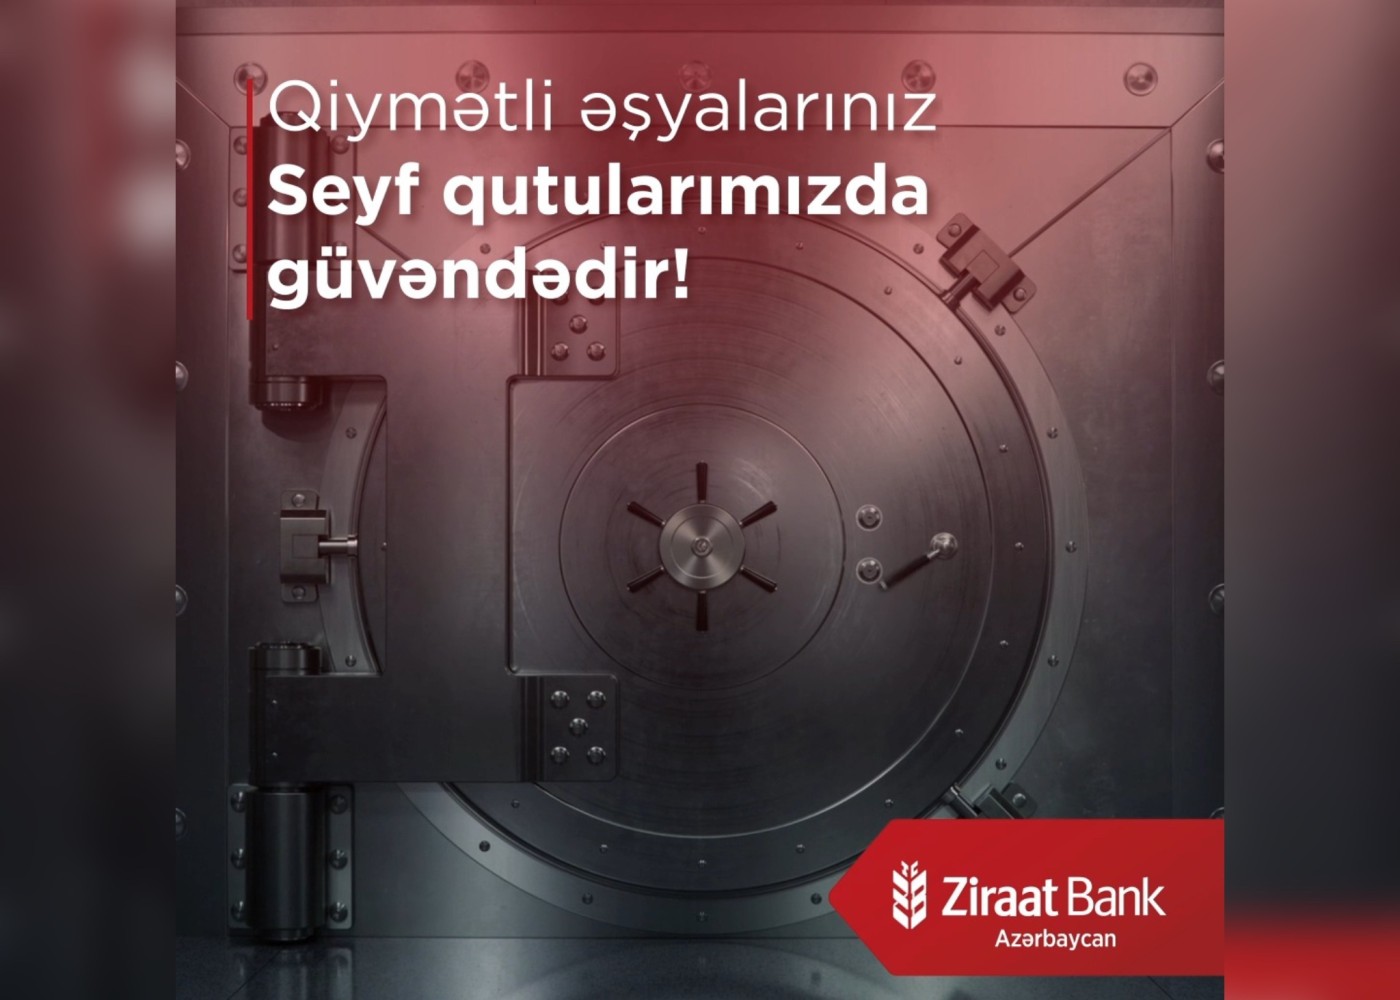 "Ziraat Bank Azərbaycan" seyf qutusu xidmətini göstərən filiallarının sayını artırıb